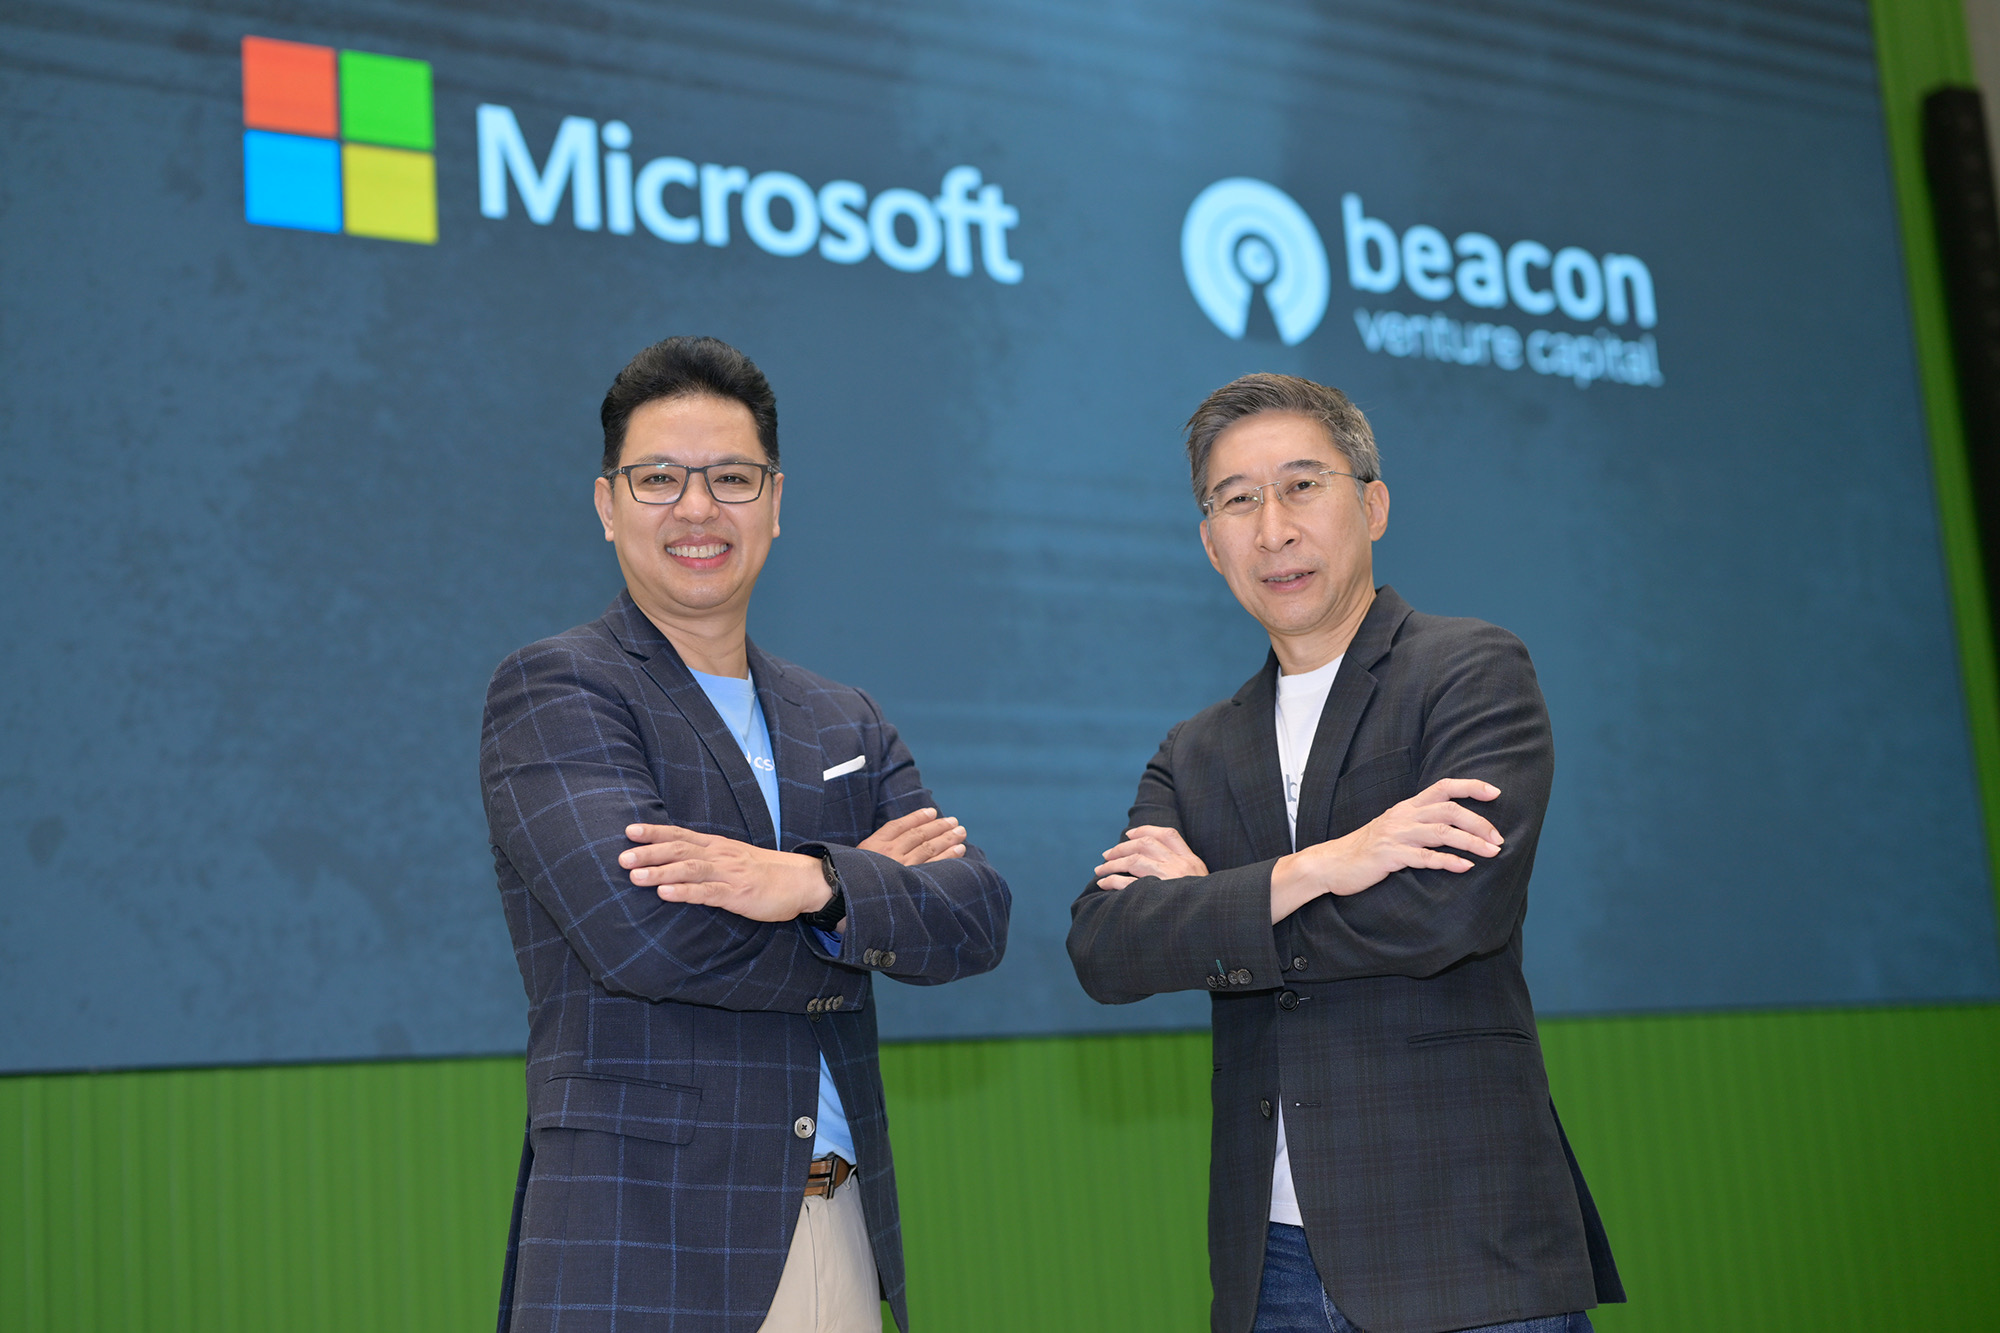  Beacon VC จับมือ ไมโครซอฟท์ ติดปีกให้สตาร์ทอัพไทย B2B หนุนองค์ความรู้-จับคู่ธุรกิจ-โซลูชันเทคโนโลยี 